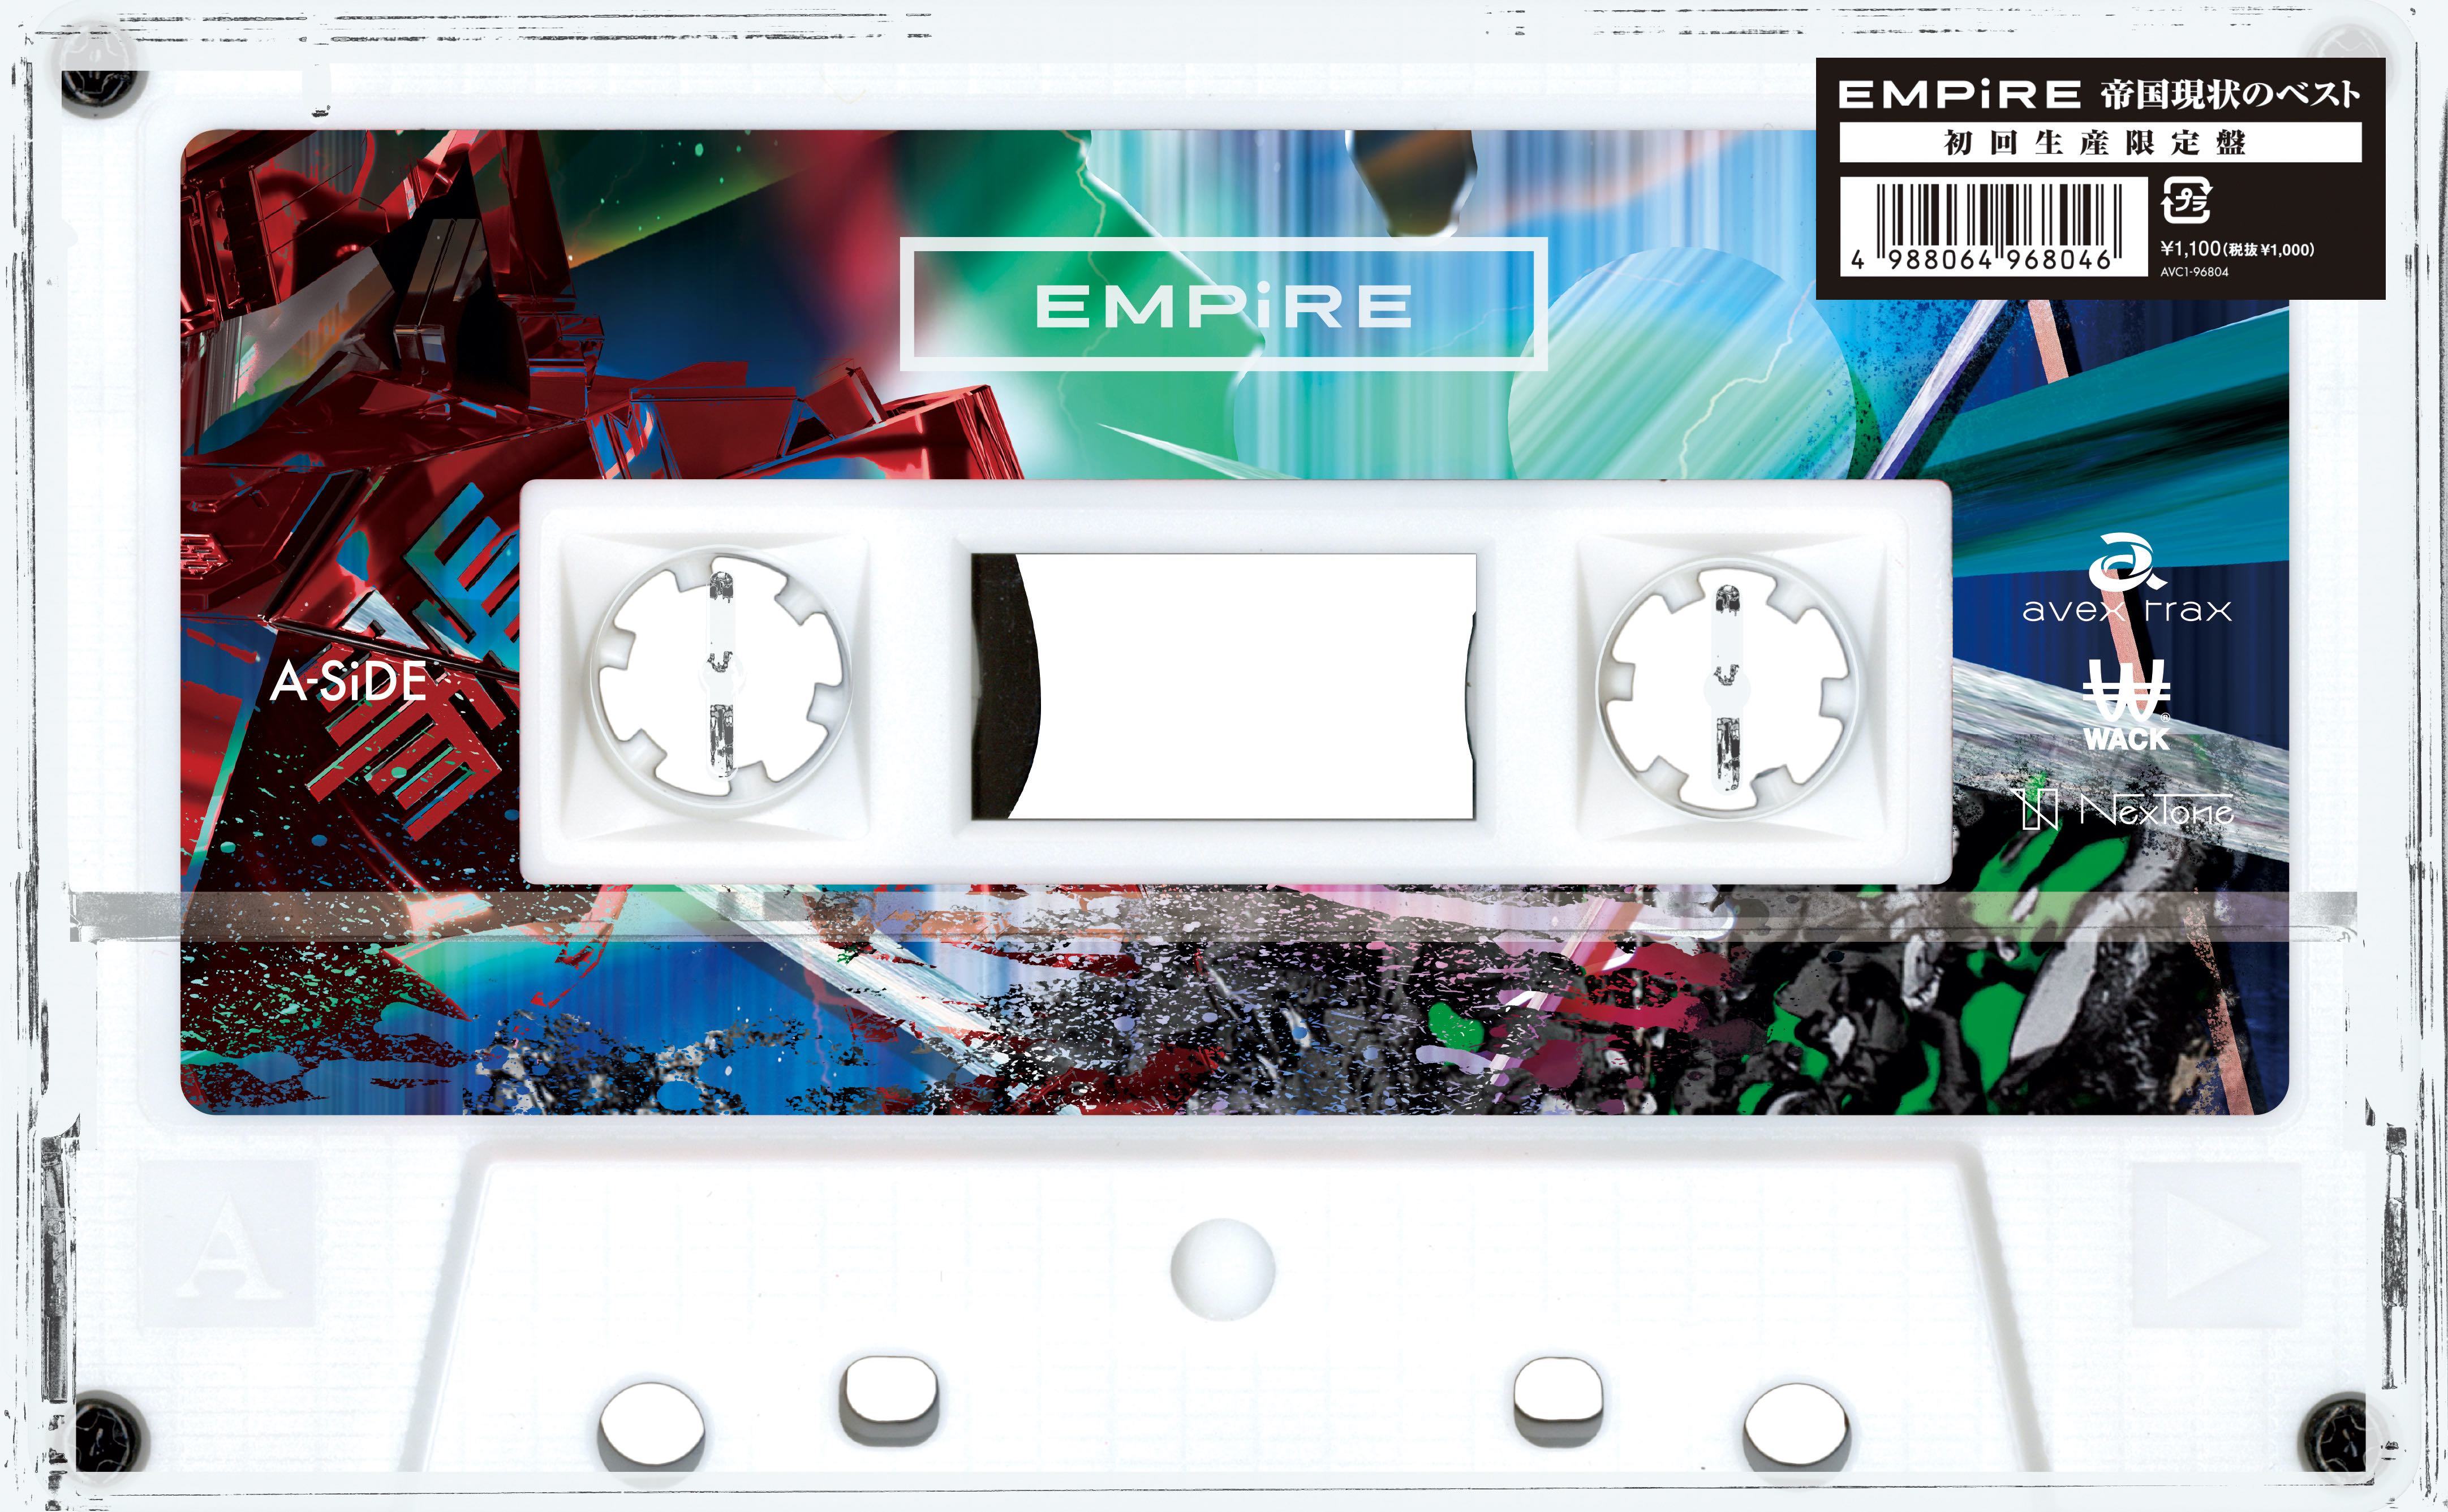 EMPiRE、9曲入りアルバム『帝国現状のベスト』を全国のタワレコで数量